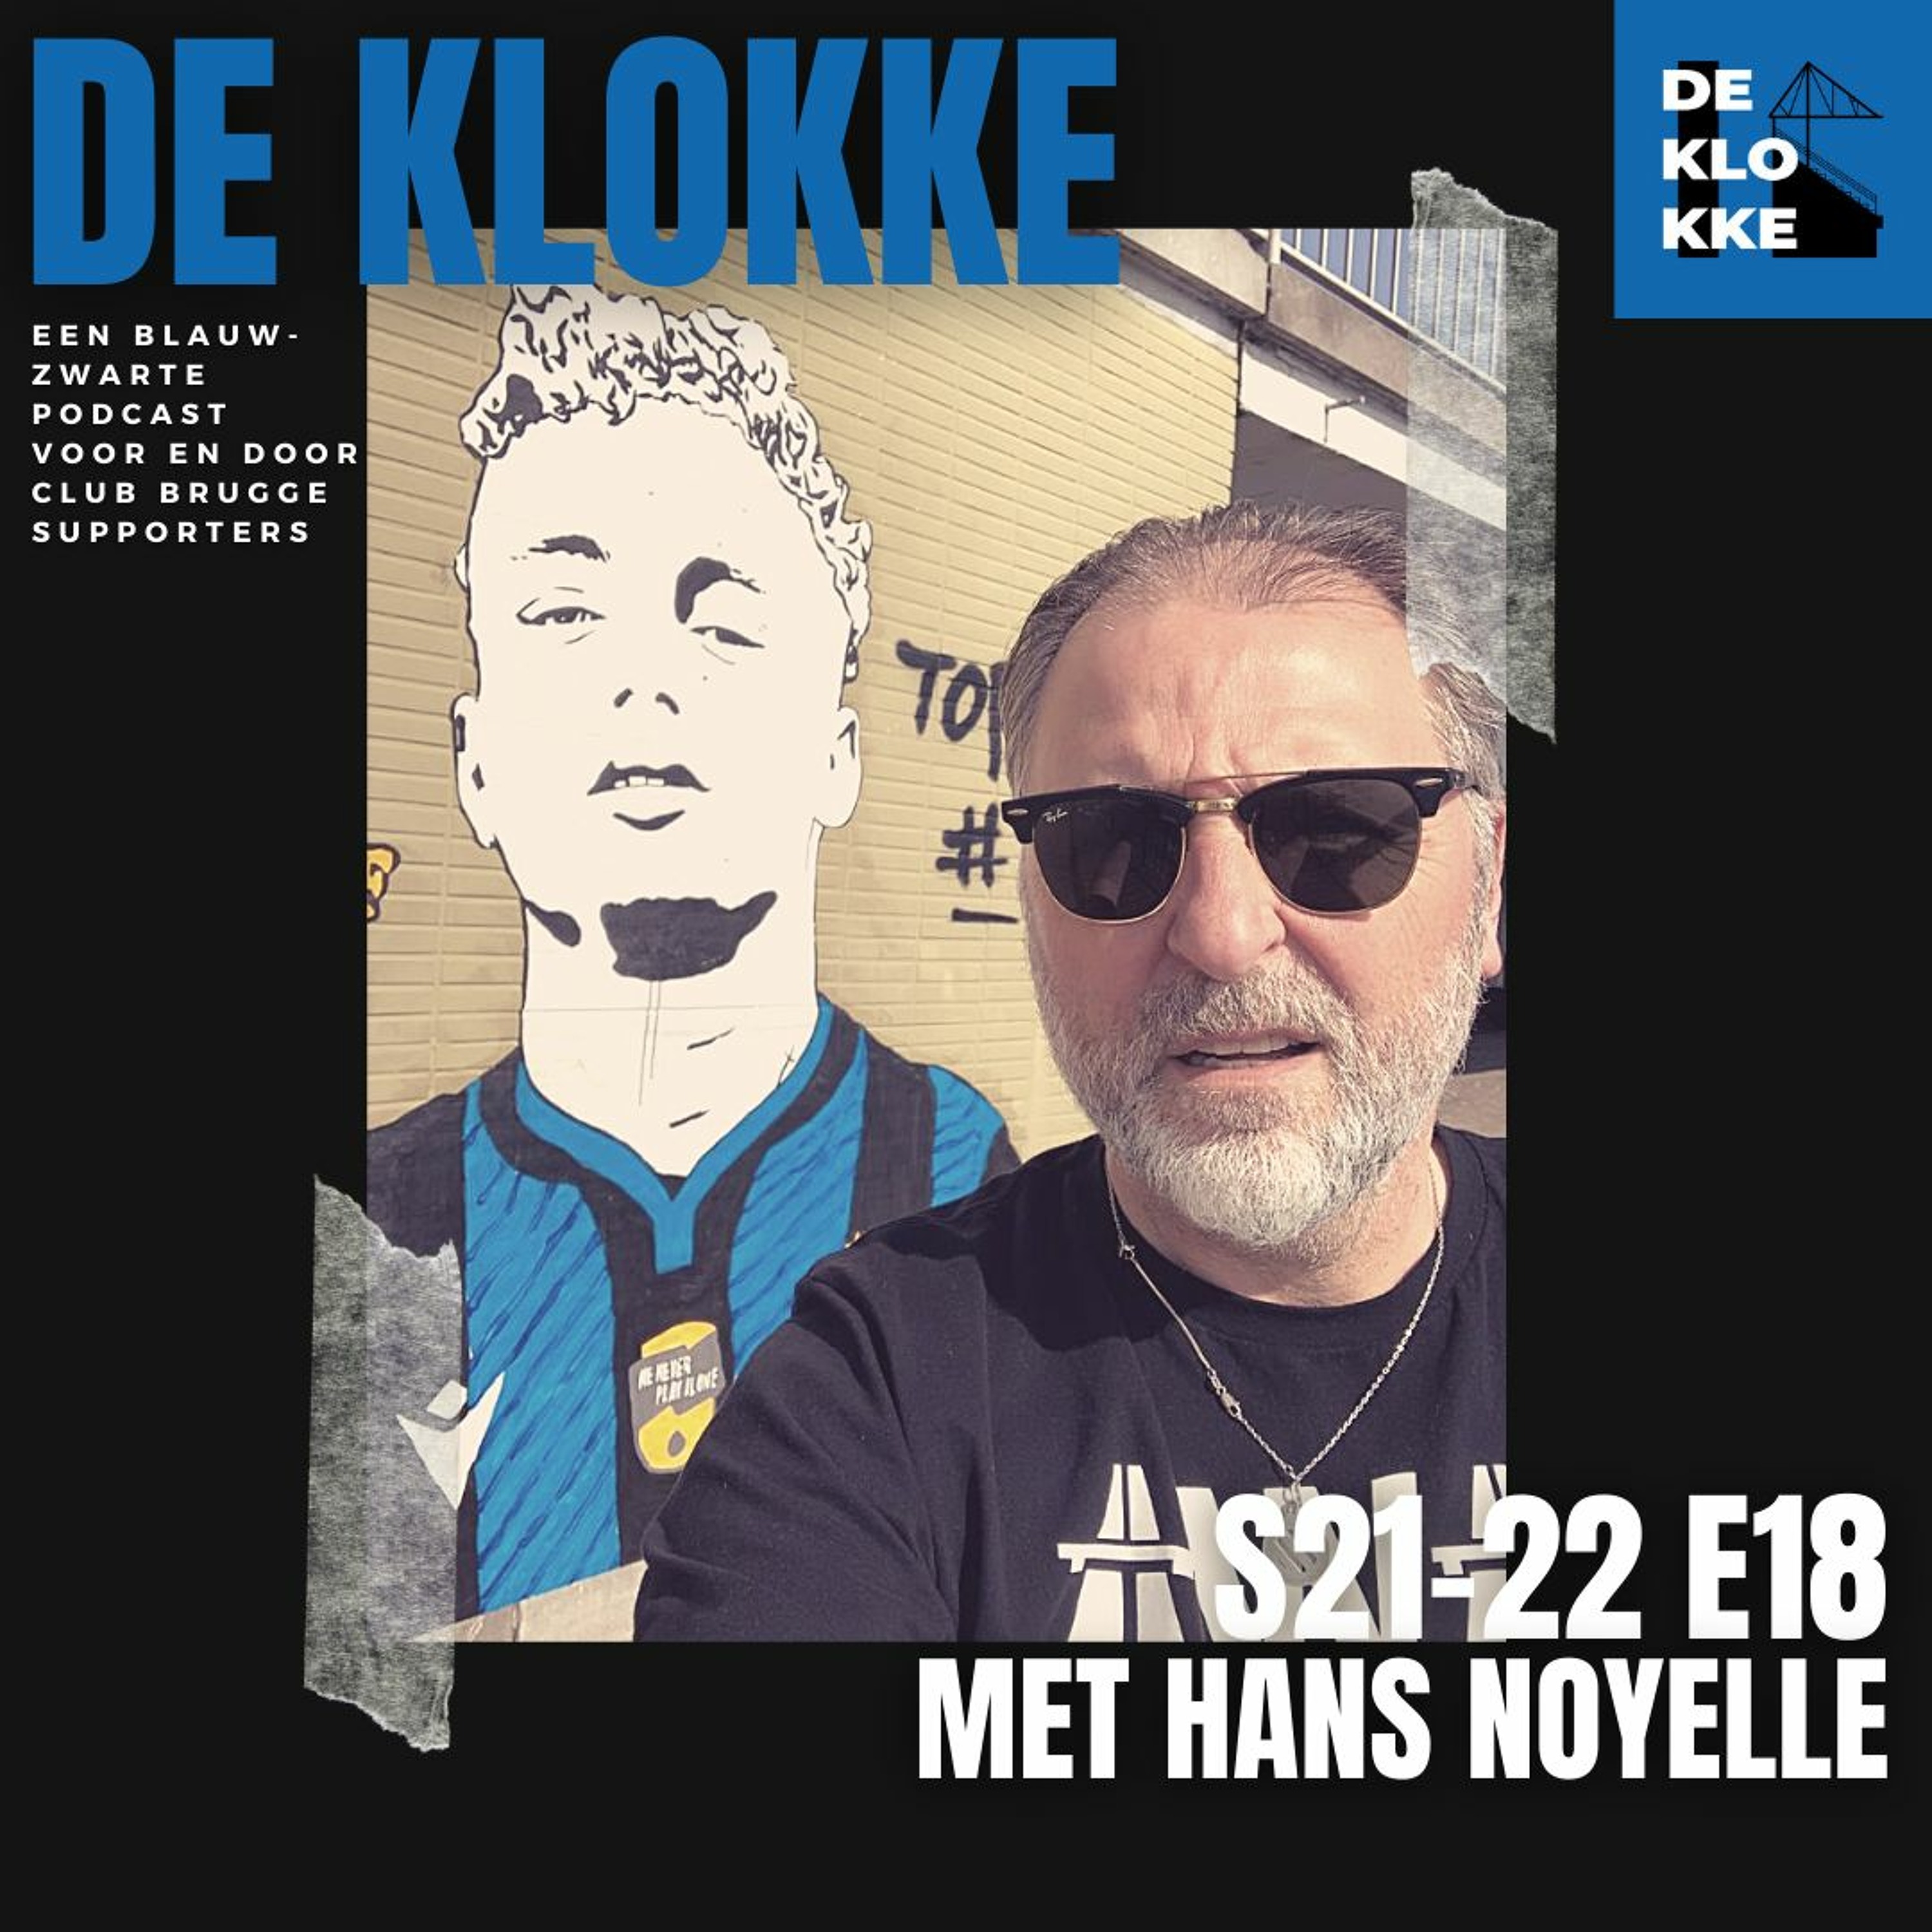 De Klokke S21-22 E18 met Hans Noyelle "Ik stond naast de eerste minister te plassen in Camp Nou"